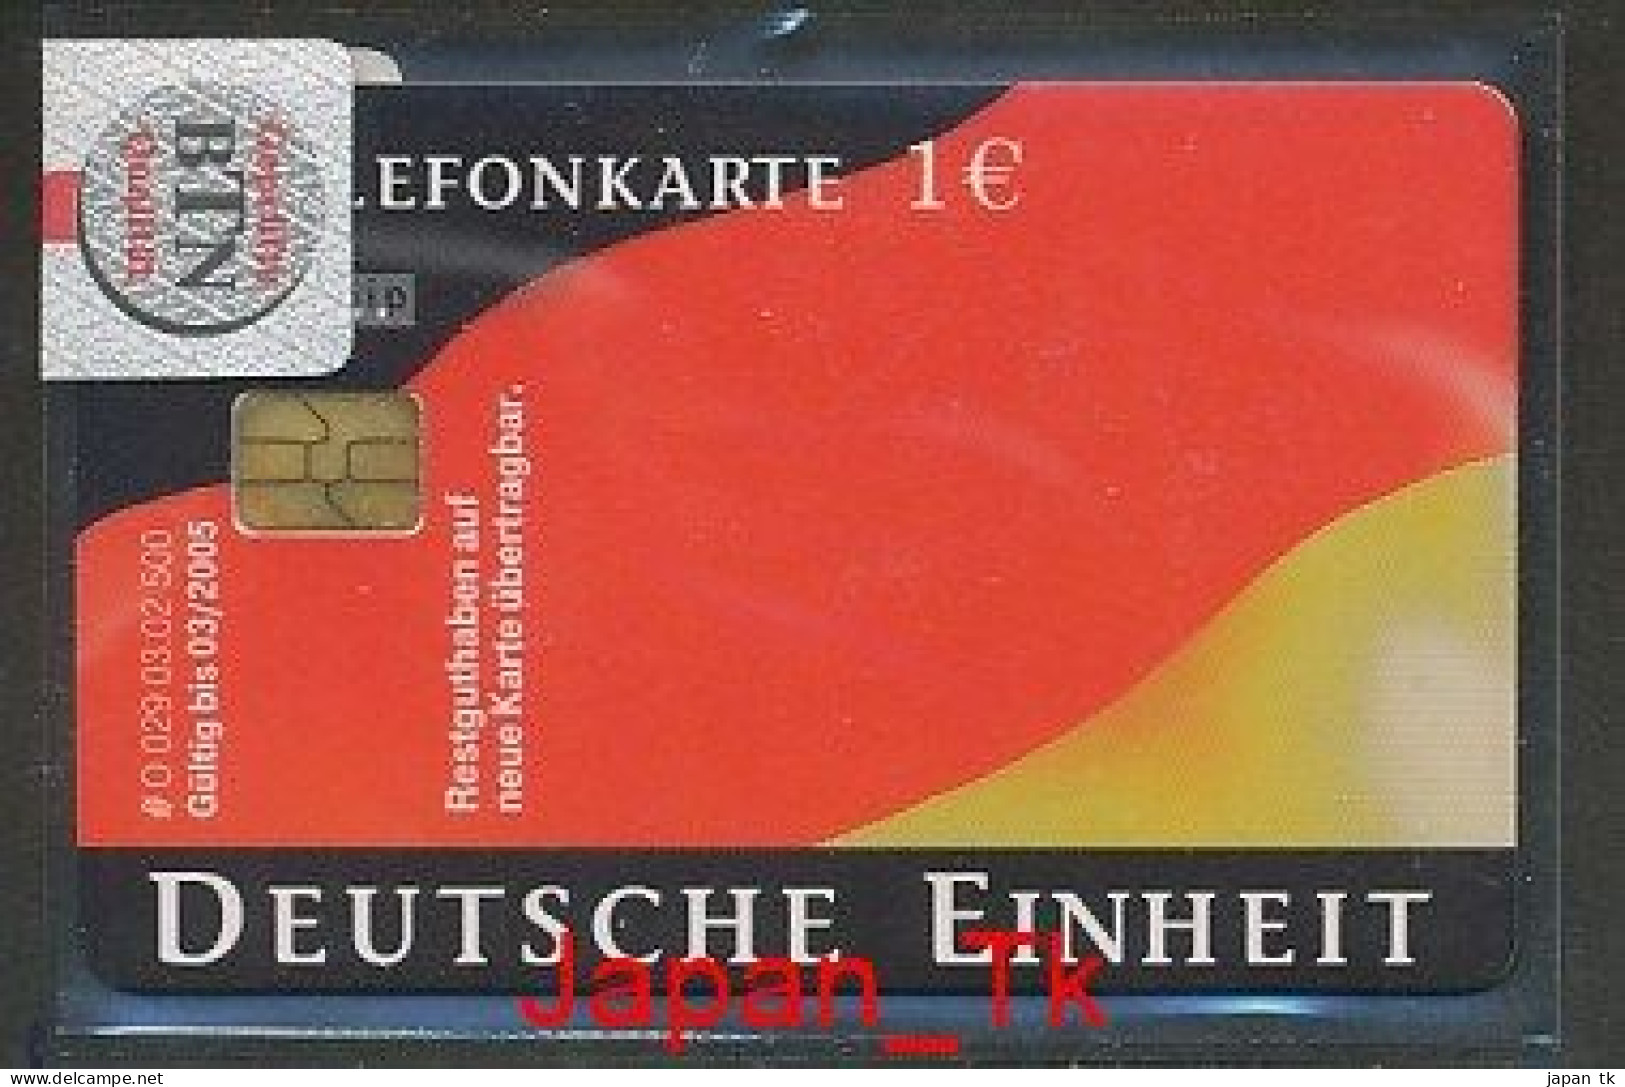 GERMANY O 0029 2002 Deutsche Einheit  - Aufl 500 - Siehe Scan - O-Series: Kundenserie Vom Sammlerservice Ausgeschlossen